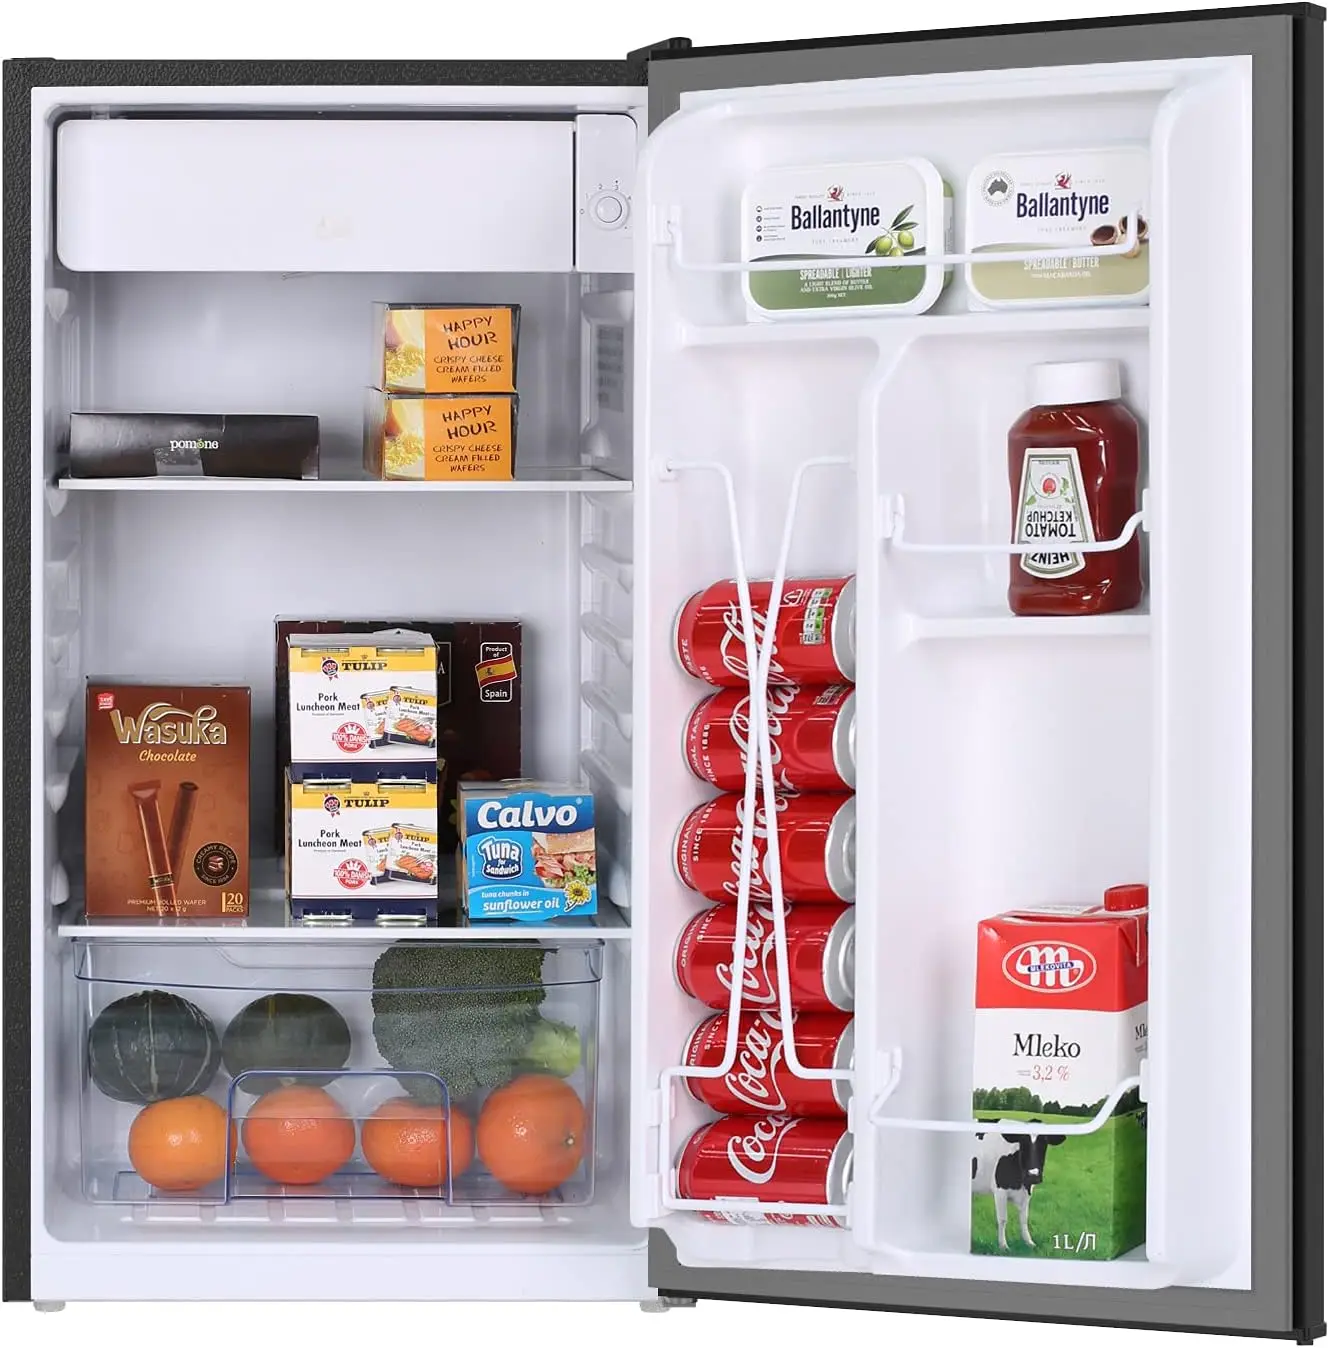 

Куб. Фут. Мини-холодильник для общежития, компактный маленький холодильник с морозильной камерой для дома, спальни, общежития, низкий уровень шума, регулируемая температура, R